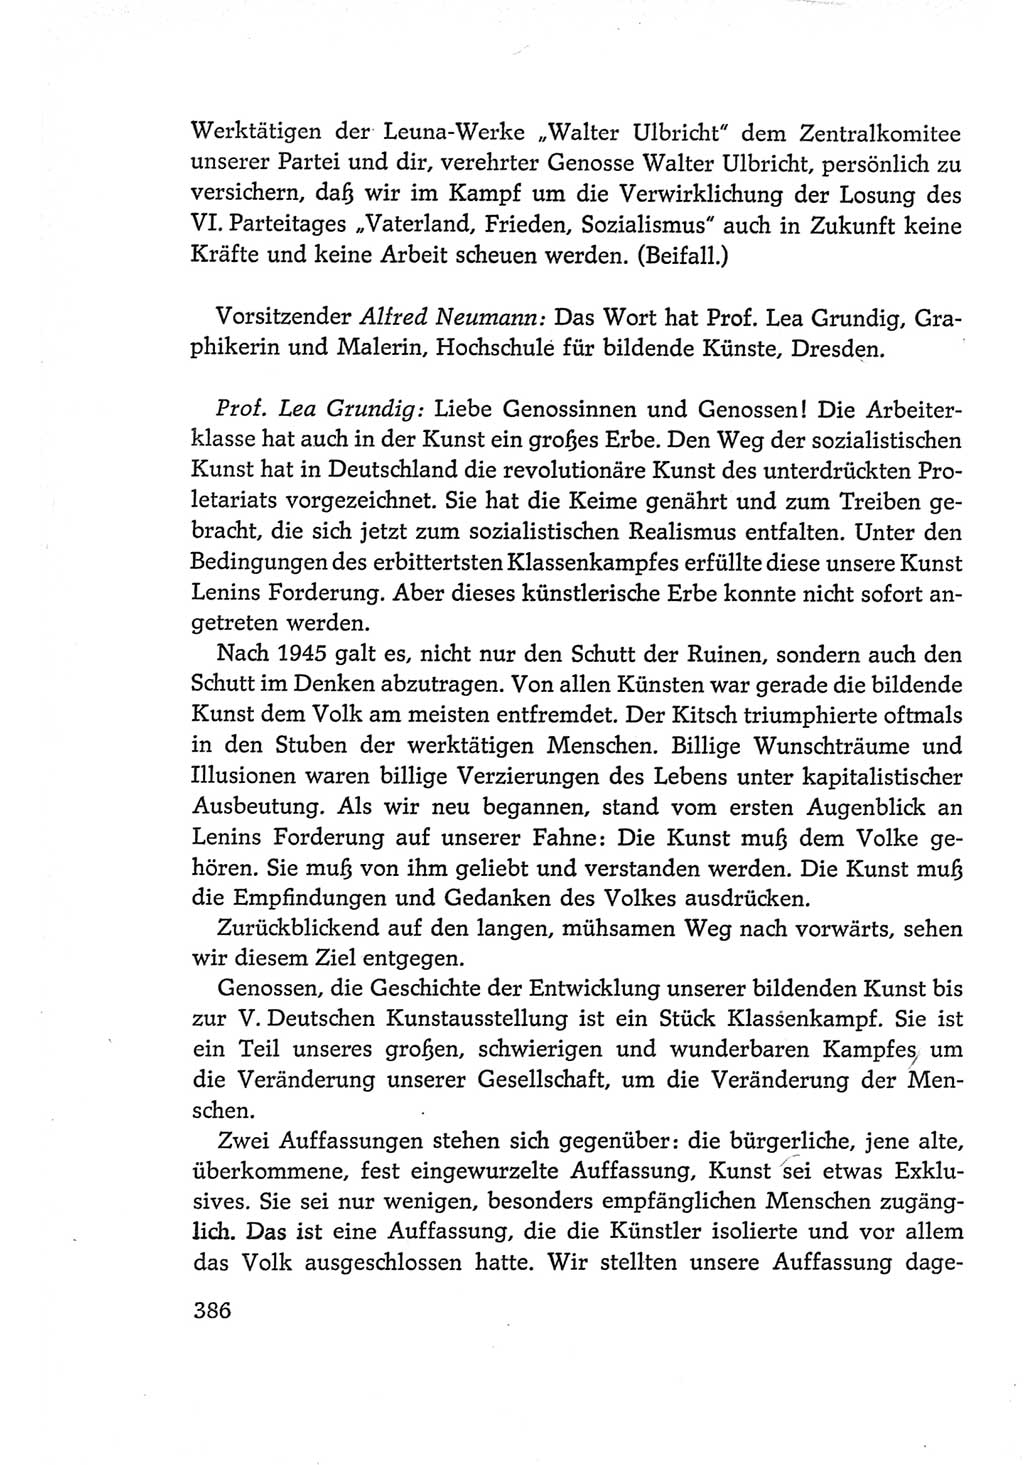 Protokoll der Verhandlungen des Ⅵ. Parteitages der Sozialistischen Einheitspartei Deutschlands (SED) [Deutsche Demokratische Republik (DDR)] 1963, Band Ⅰ, Seite 386 (Prot. Verh. Ⅵ. PT SED DDR 1963, Bd. Ⅰ, S. 386)